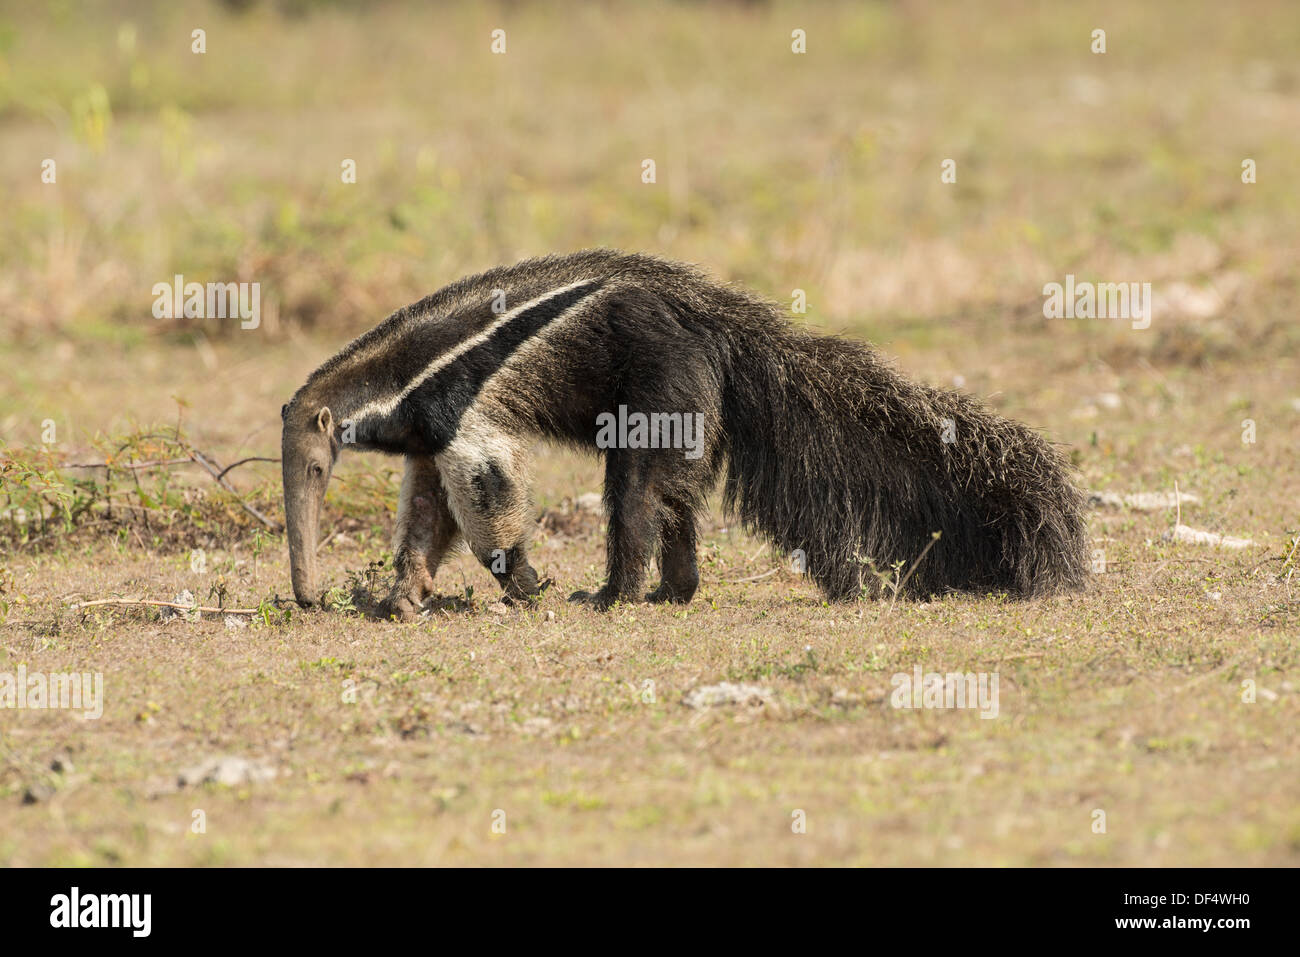 Stock Foto von einem Ameisenbär, Fütterung, Pantanal, Brasilien Stockfoto